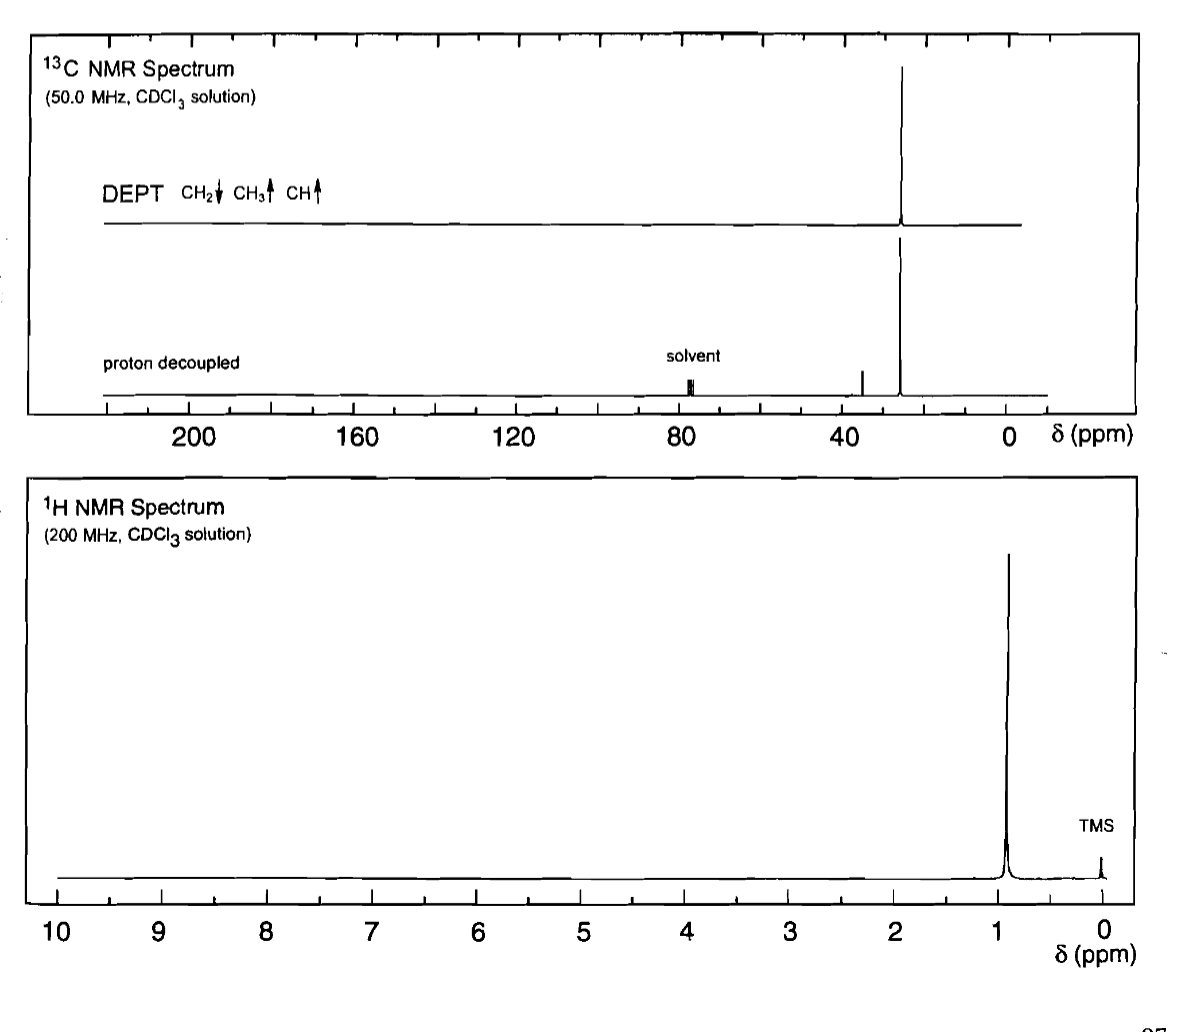 13C NMR Spectrum
(50.0 MHz, CDCI, solution)
DEPT CH2 CH3 CH↑
proton decoupled
solvent
200
160
120
80
40
8 (ppm)
1H NMR Spectrum
(200 MHz, CDCl3 solution)
10
9
8
7
6
50
TMS
4
3 2
1
0
8 (ppm)